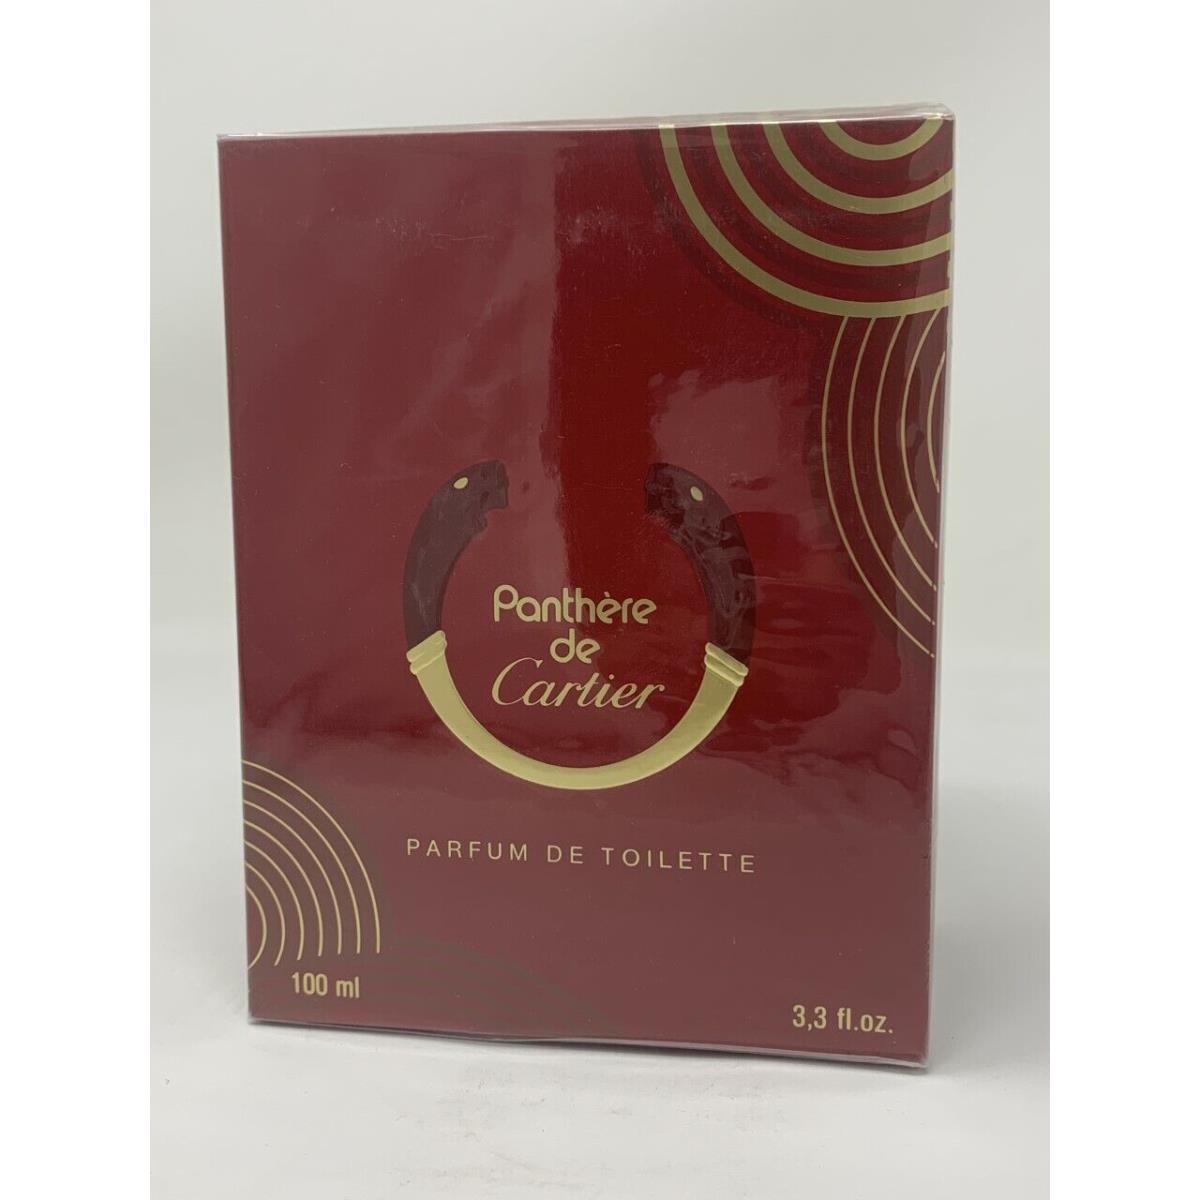 Cartier Panth re de Cartier Parfum de Toilette 3.3 Fl. Oz. Splash Rare Item